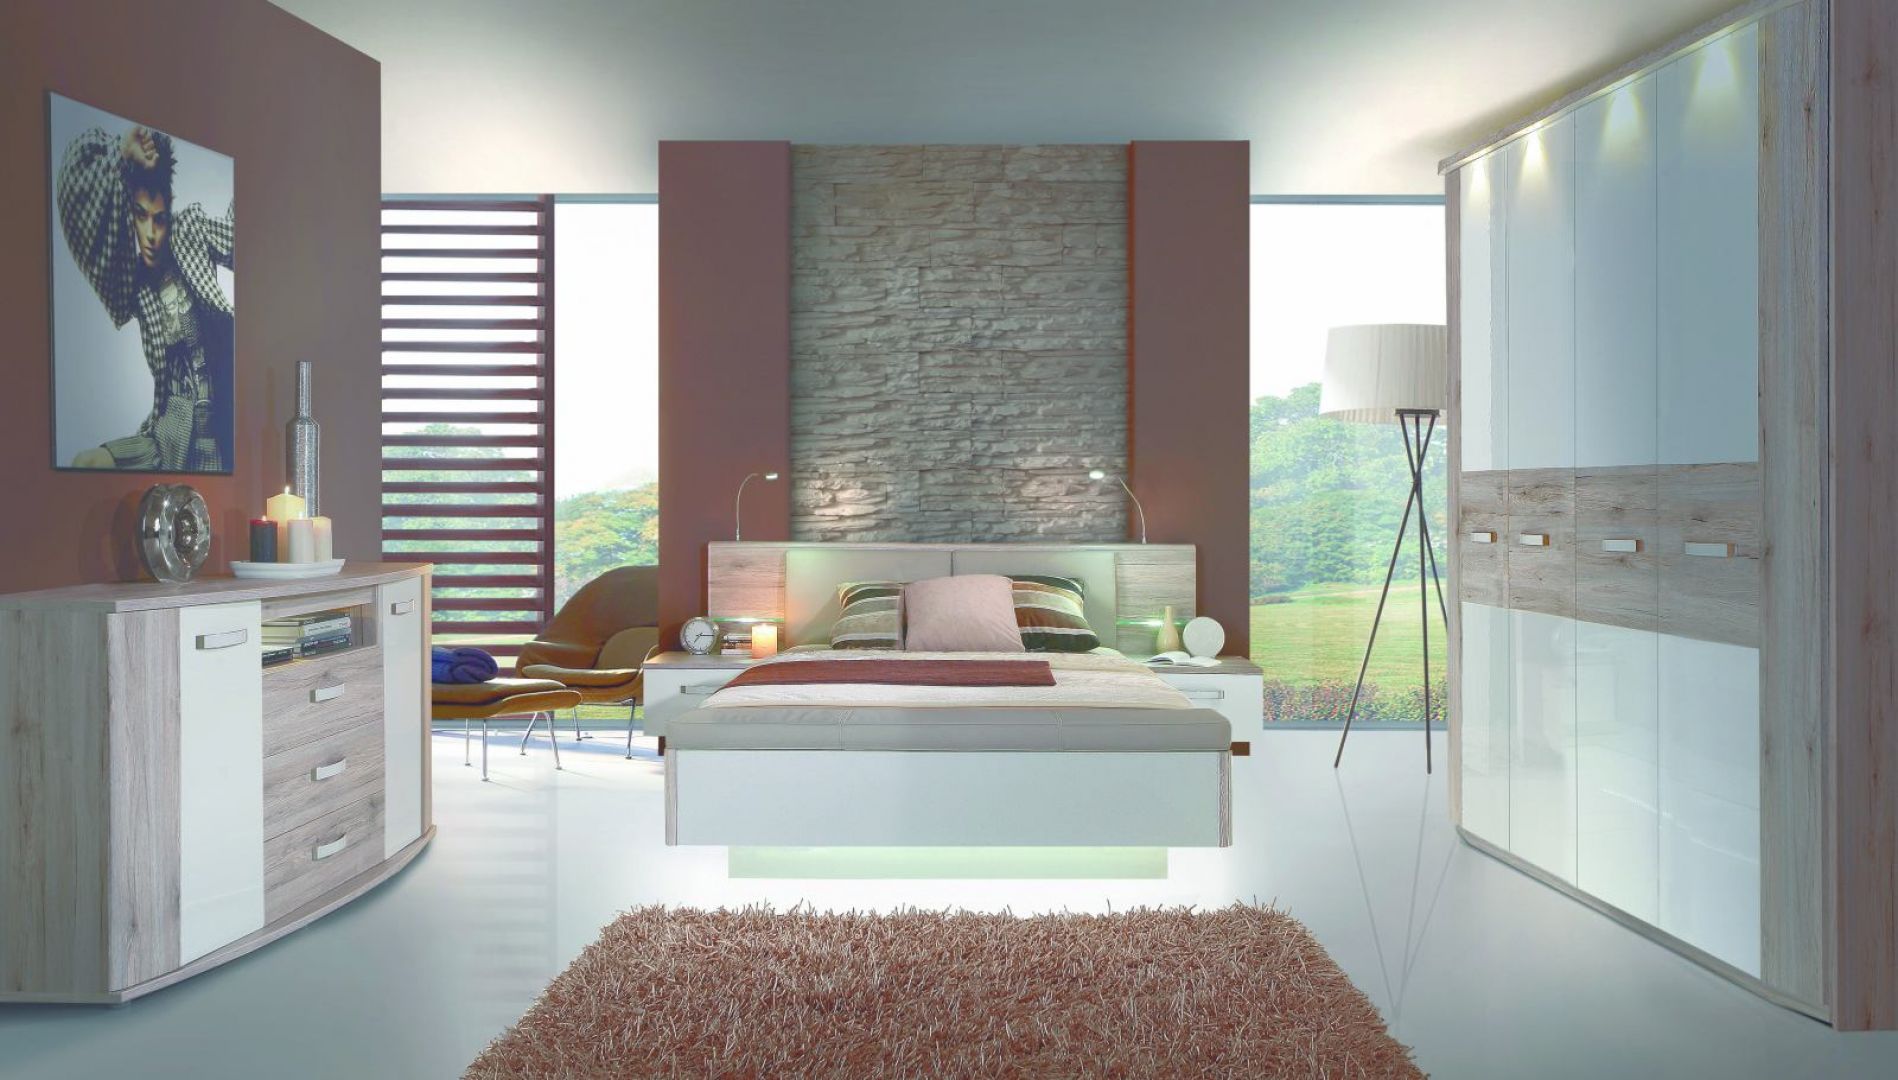 Kolekcja Rondino to modne połączenie bieli i drewna. Cena łóżka: około 1.800 zł. Fot. Forte 